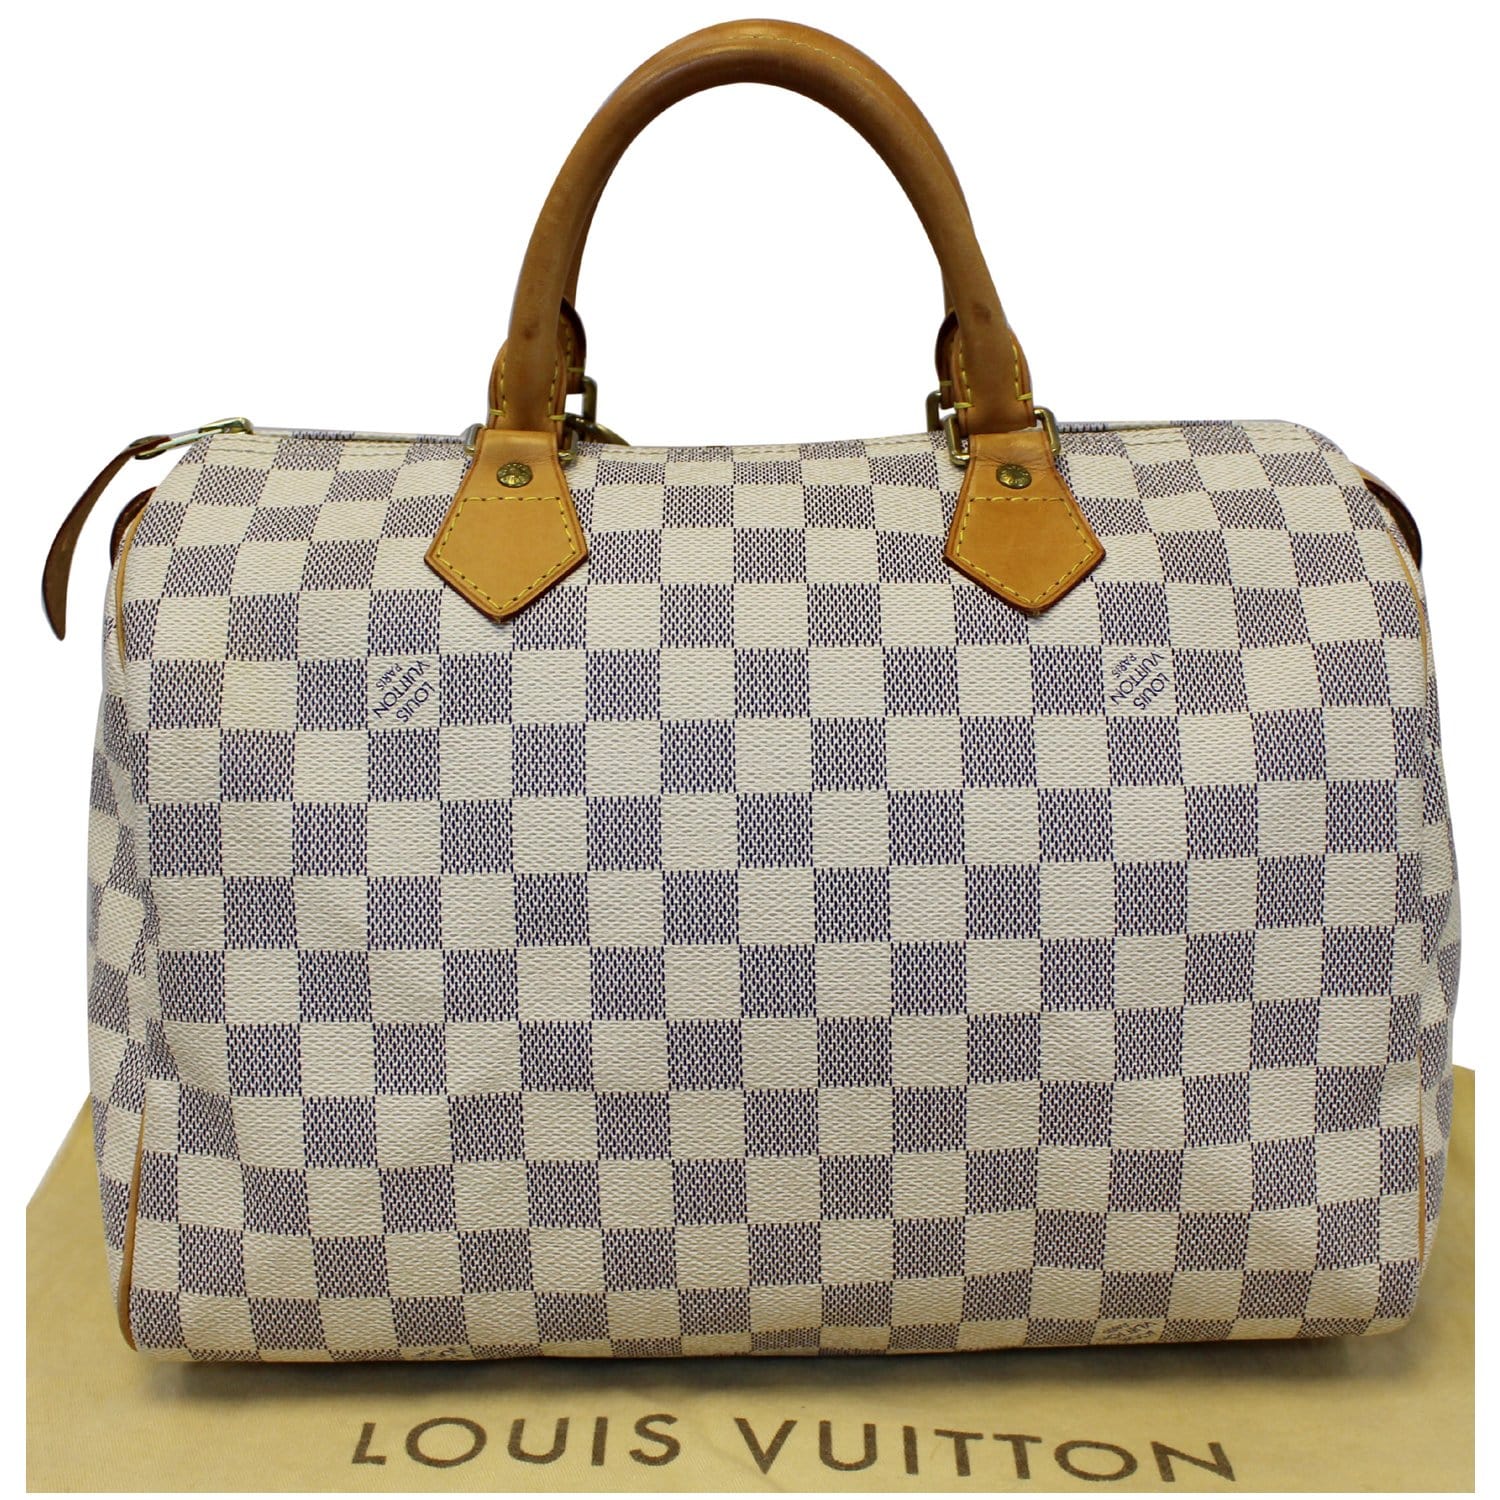 Louis Vuitton Speedy 30 White Damier Azur Canvas Satchel